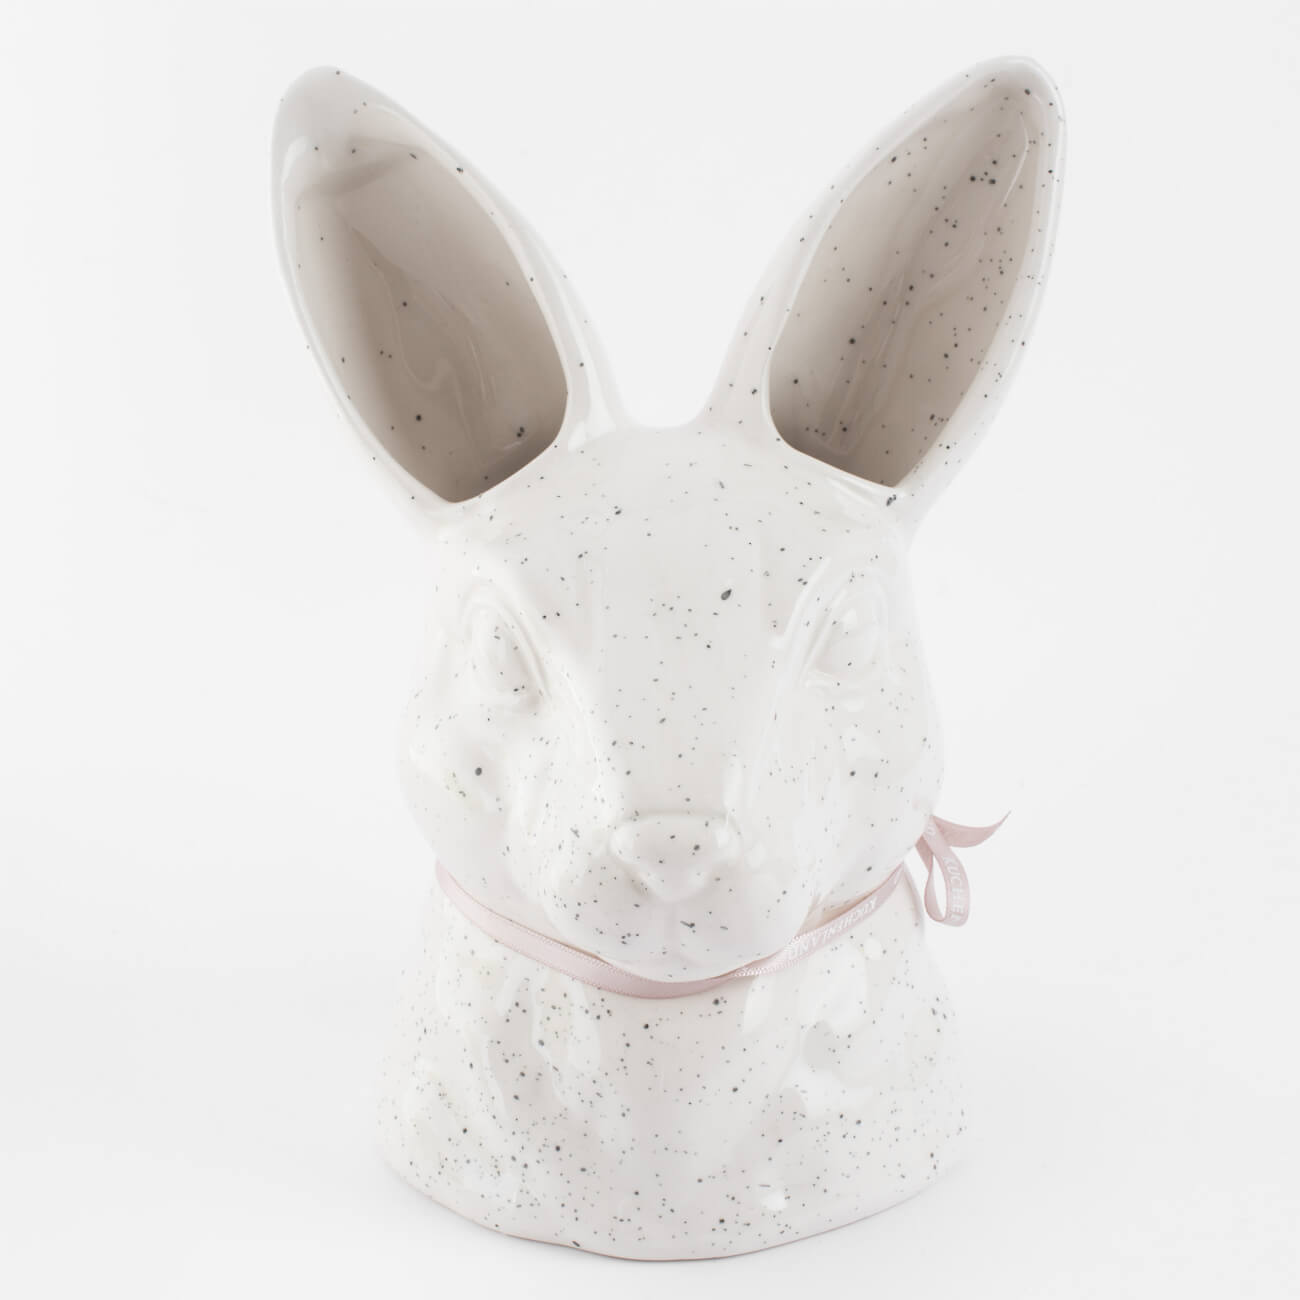 Ваза для цветов, 20 см, декоративная, керамика, молочная, в крапинку, Кролик, Natural Easter ваза для ов 25 см декоративная с ручками керамика молочная minimalism